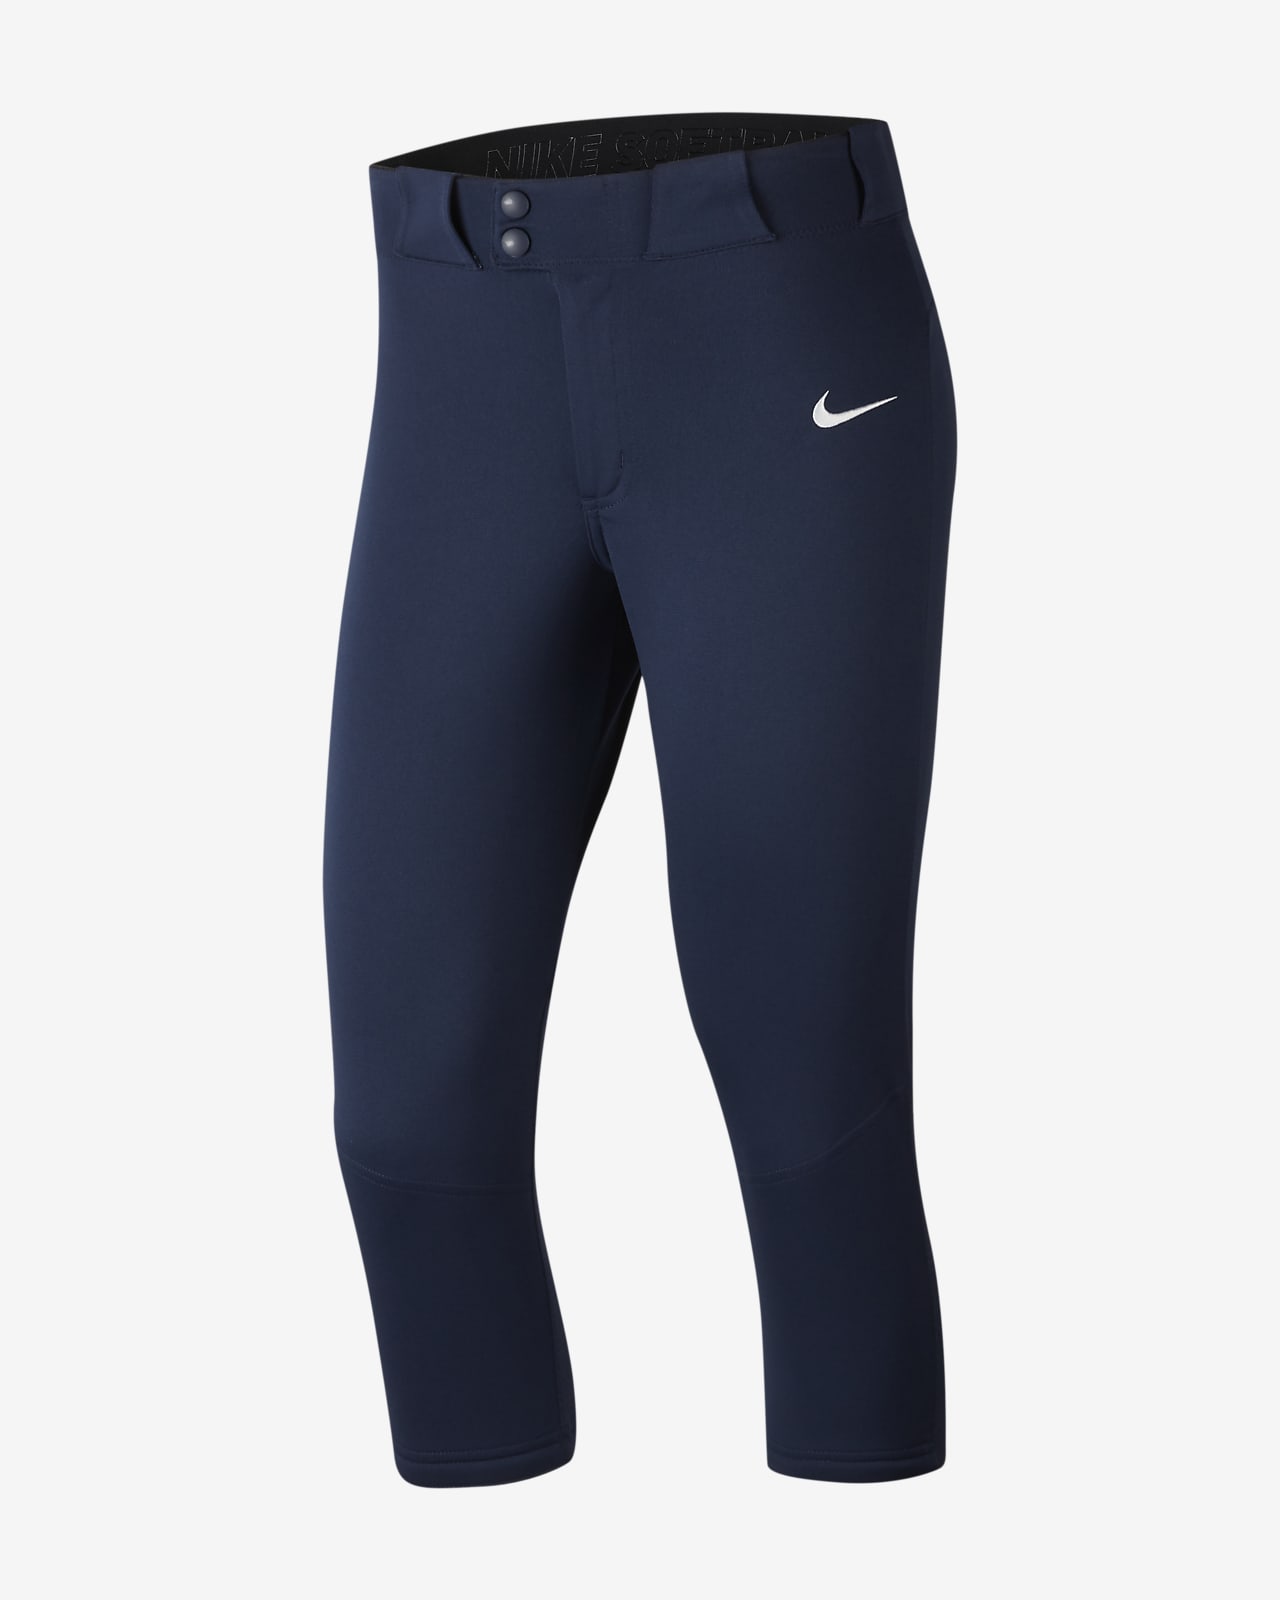 4-Length Softball Pants. Nike 